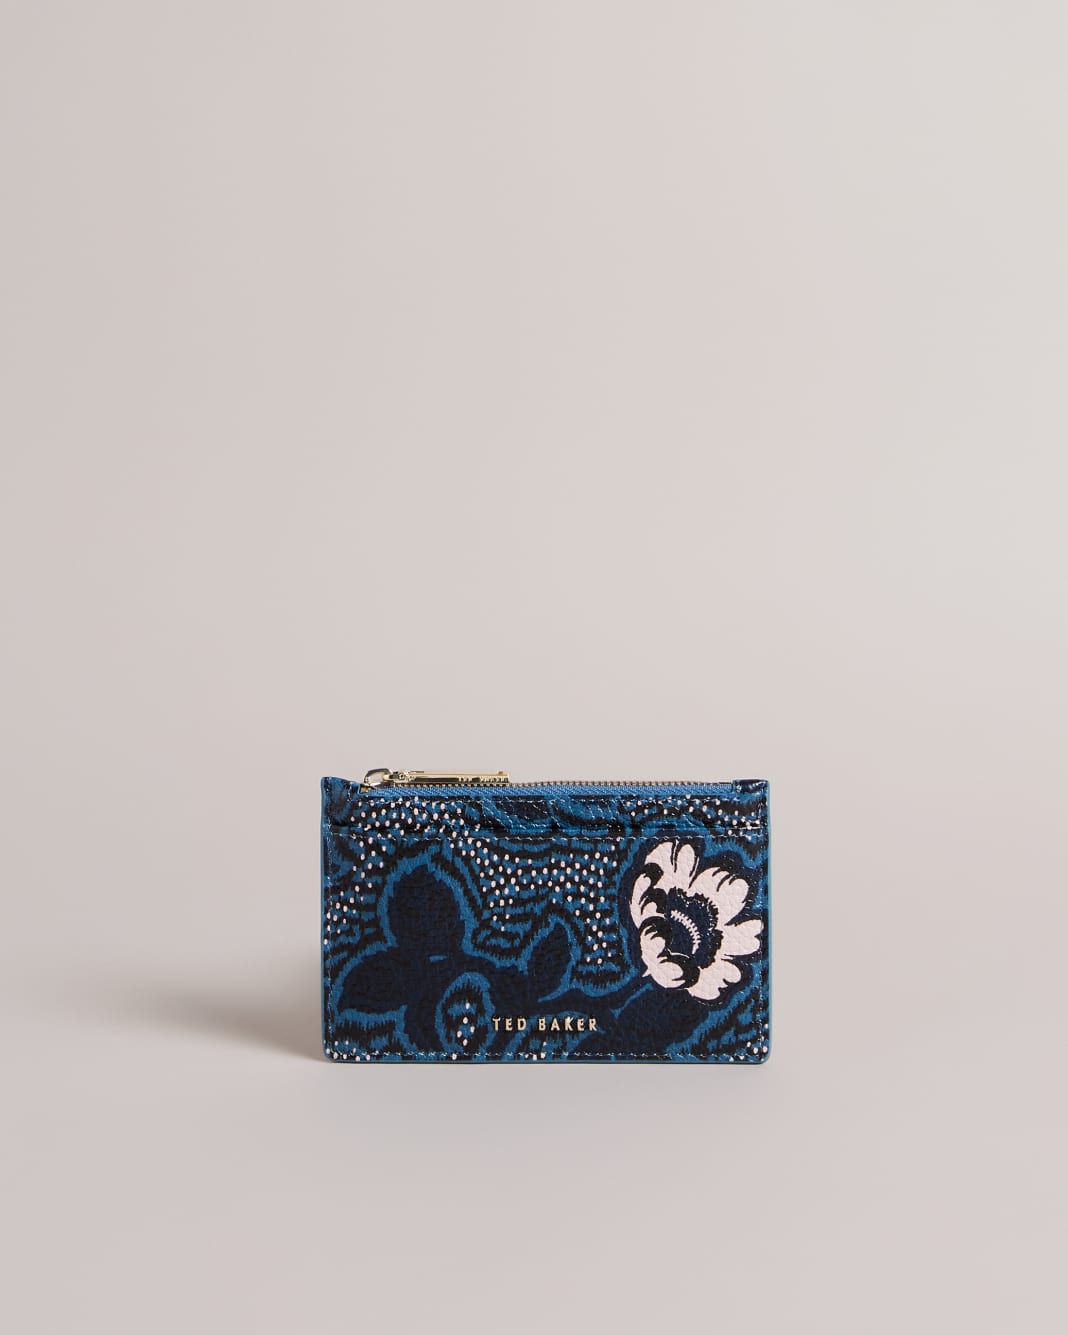 테드 베이커 카드지갑 Ted Baker Printed Zipped Card Holder,Dark Blue